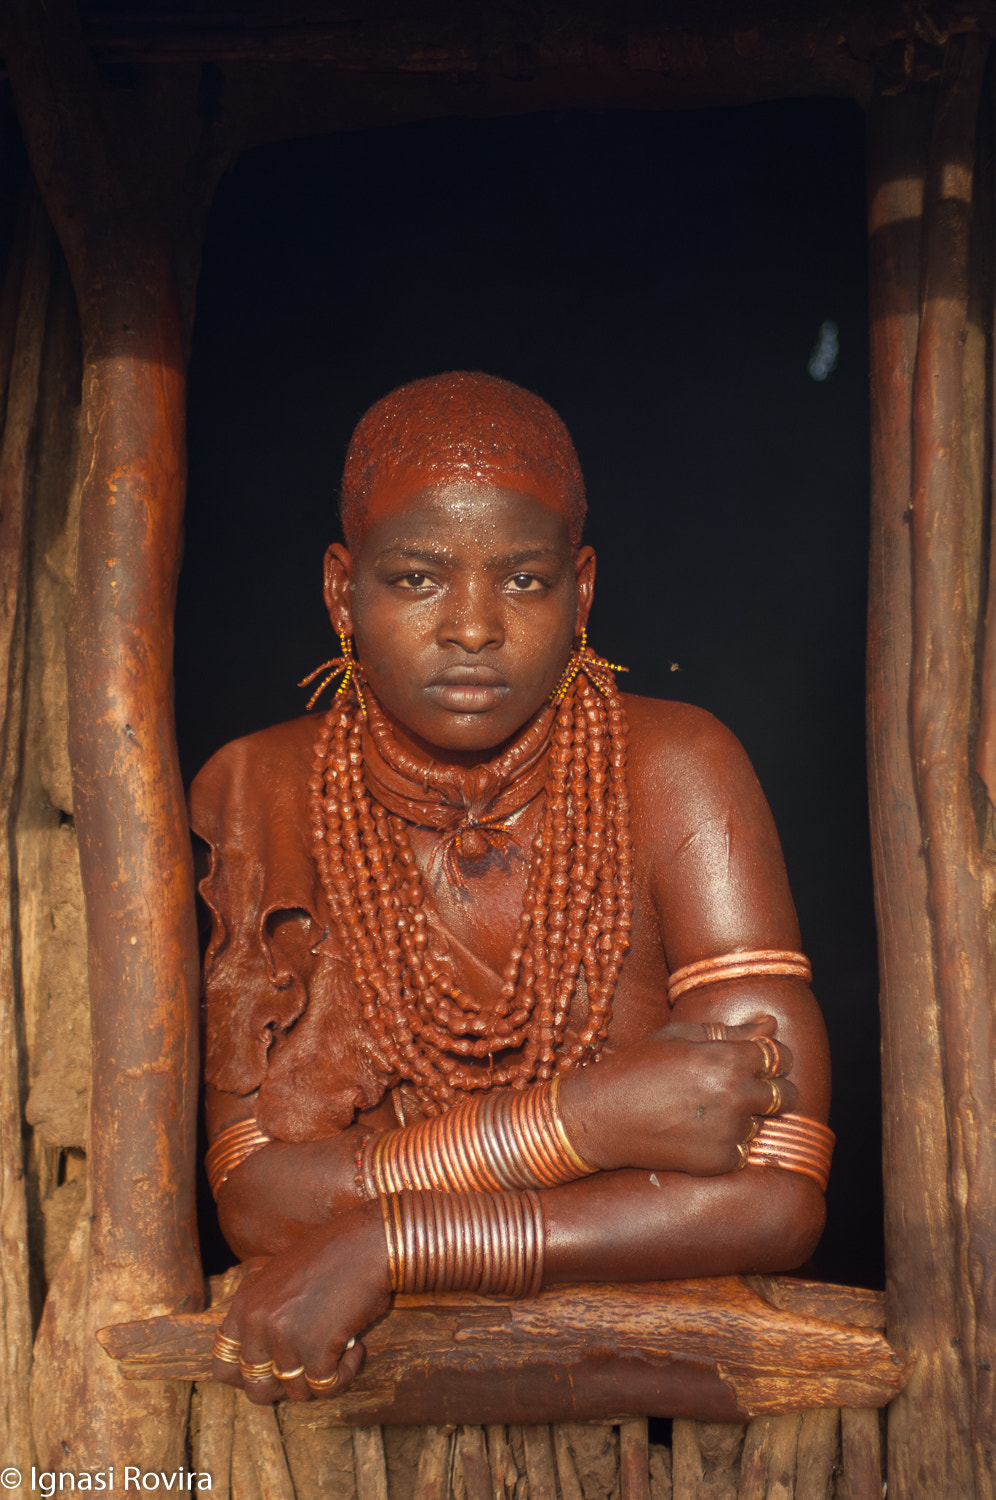 AF Zoom-Nikkor 35-70mm f/2.8D N sample photo. Hamar (ethnic grup). ethiopia photography